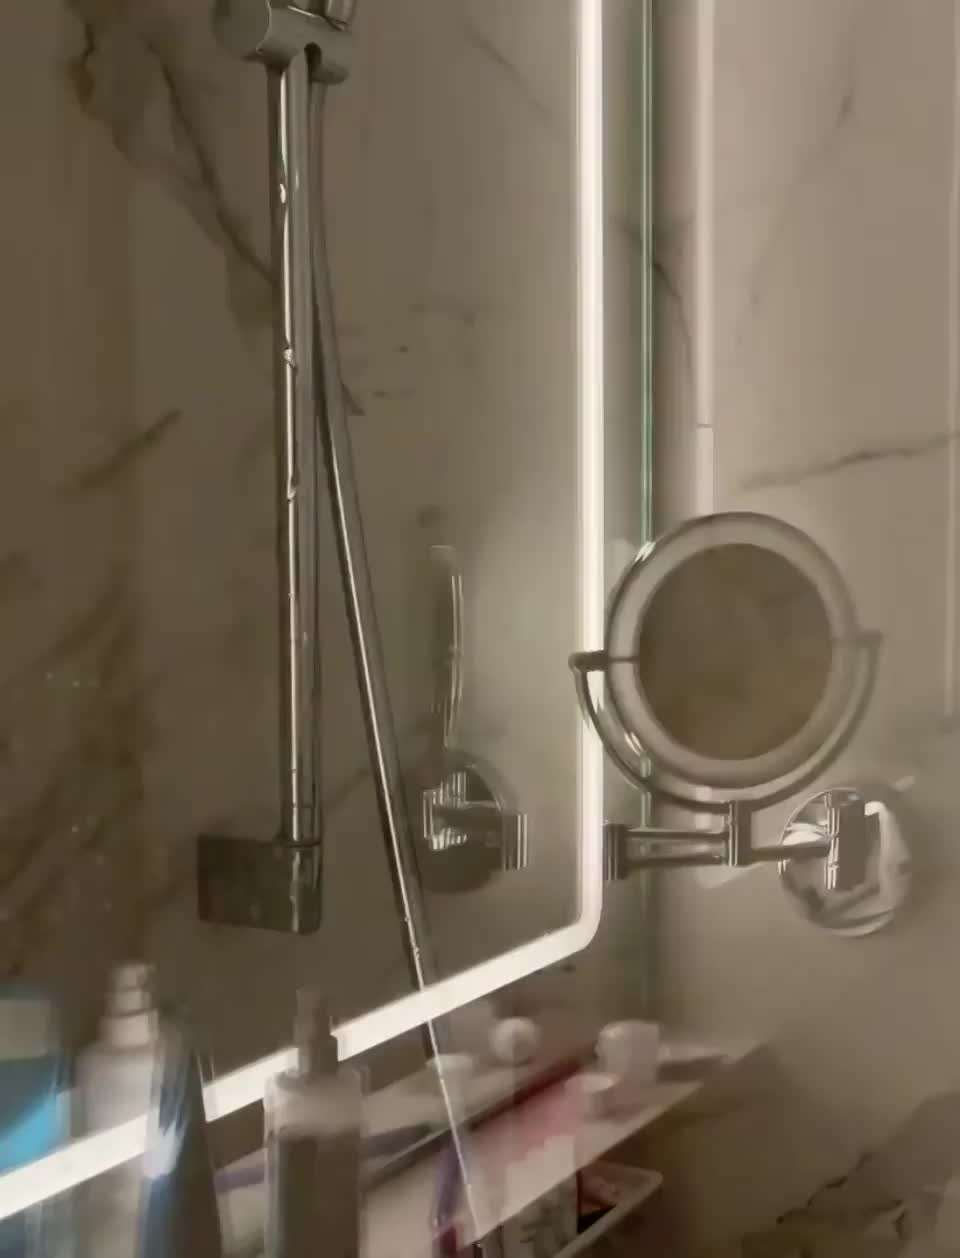 In bathroom : video clip